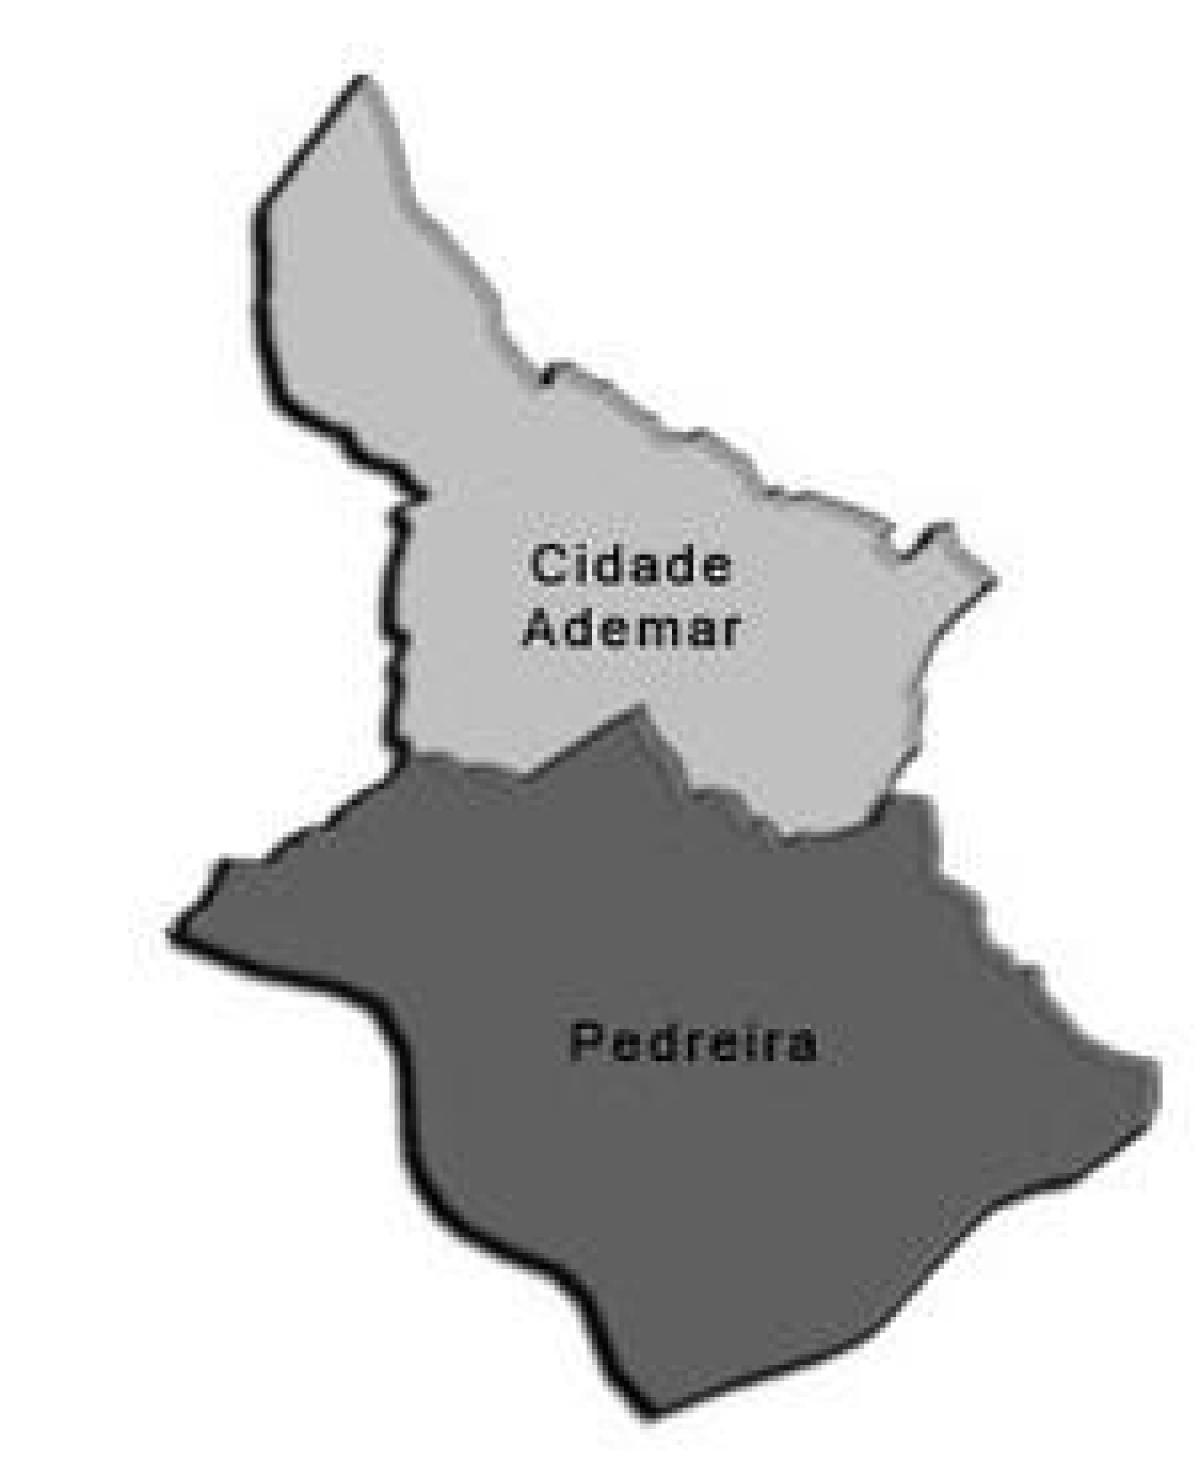 Kaart Cidade Ademar alam-prefektuur